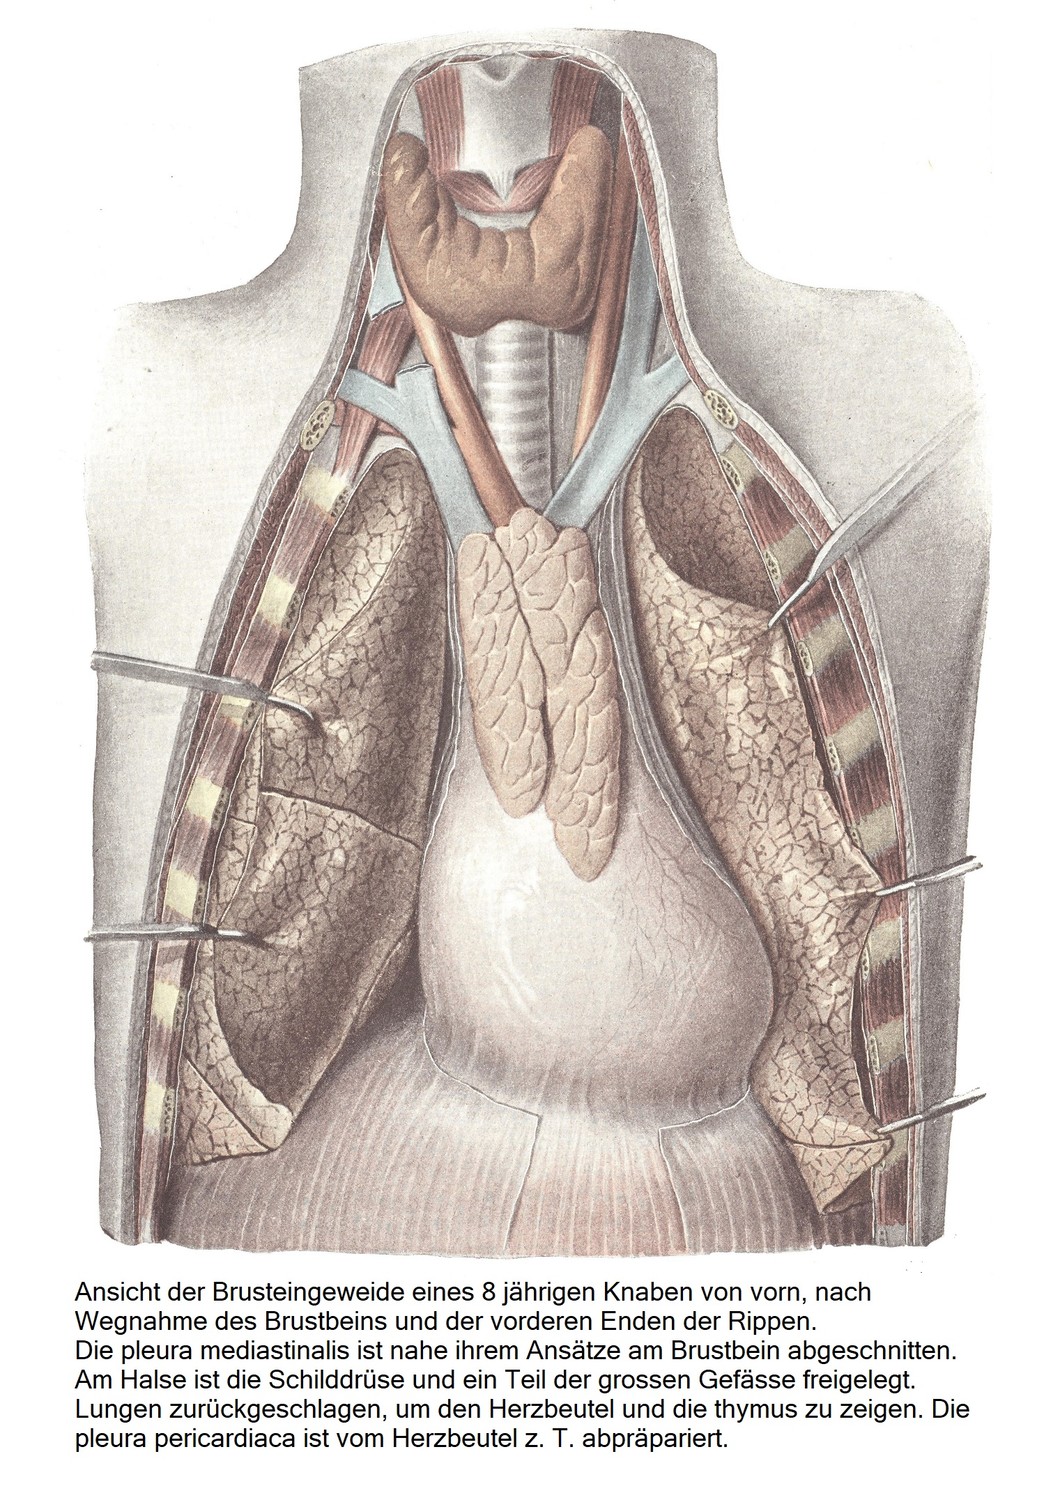 Вид спереди внутренних органов грудной клетки 8-летнего мальчика после удаления грудины и передних концов ребер. Медиастинальная плевра отсекается в месте ее прикрепления к грудине. На шее обнажают щитовидную железу и часть крупных сосудов. Легкие отогнуты назад, чтобы показать перикард и тимус. Перикардиальная плевра отделена от перикарда 